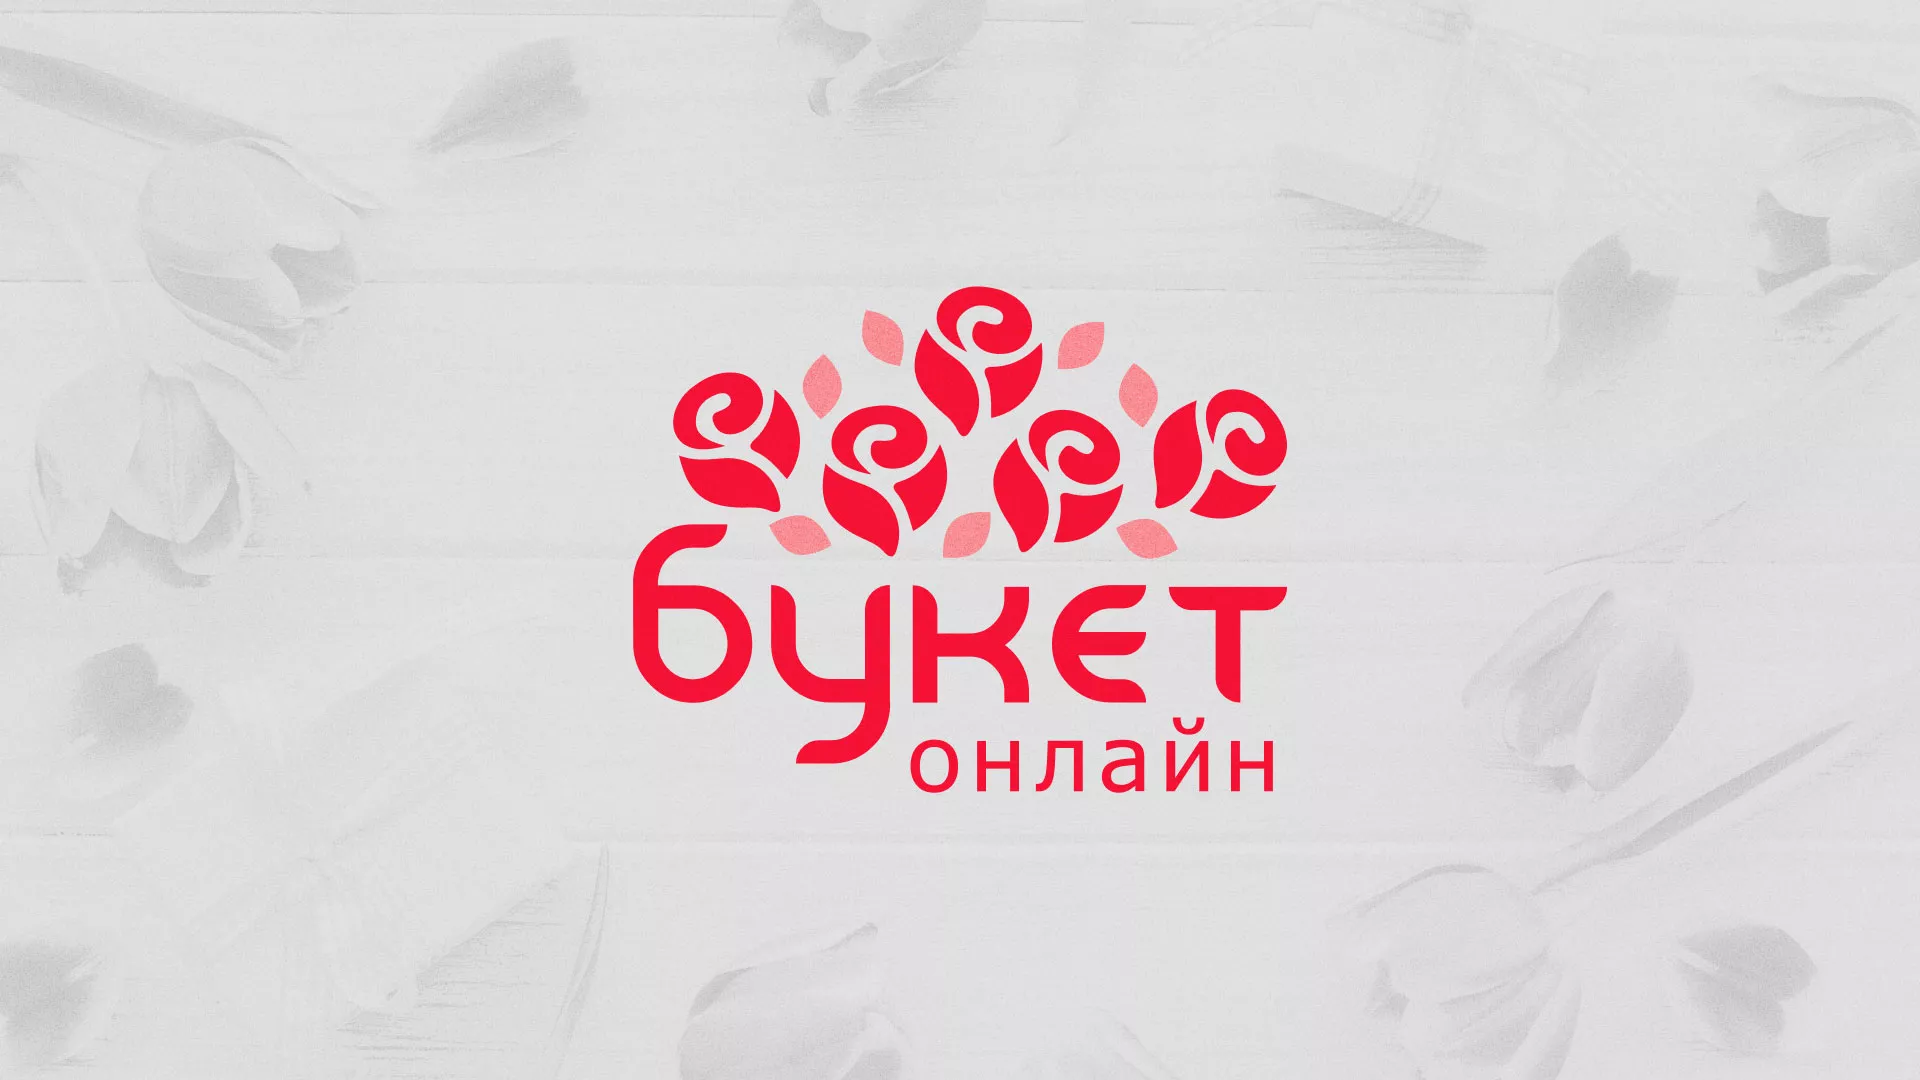 Создание интернет-магазина «Букет-онлайн» по цветам в Мантурово